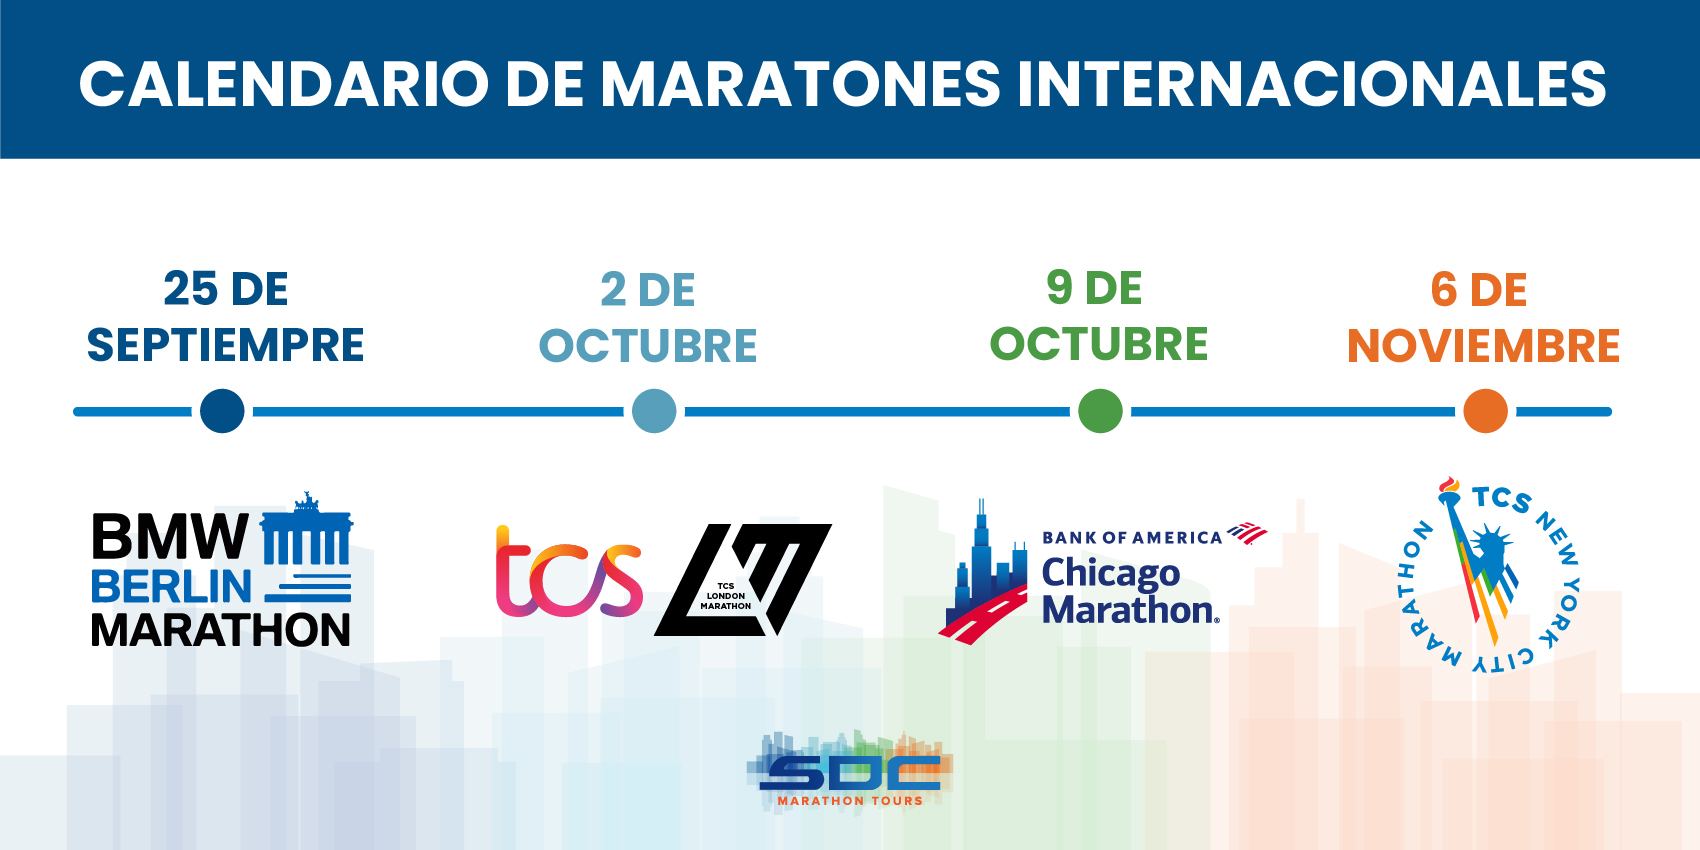 Calendario Maratones Internacionales